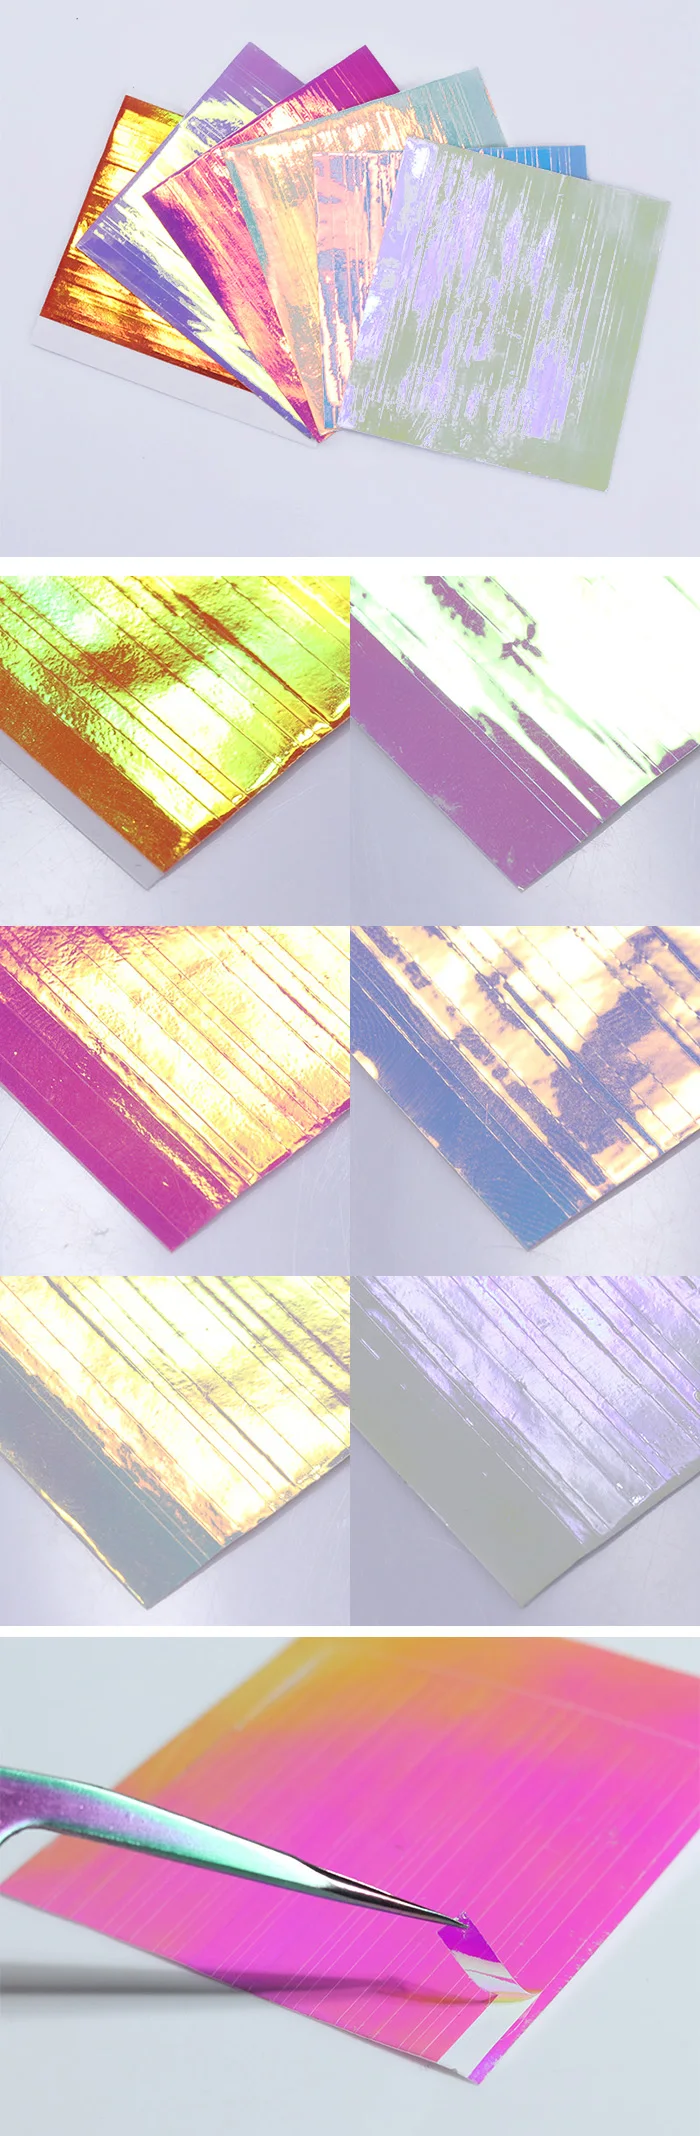 6 листов BORN PRETTY клей Holo 3D наклейки для ногтей ультра тонкая Лазерная линия конфеты наклейка из фольги для ногтей